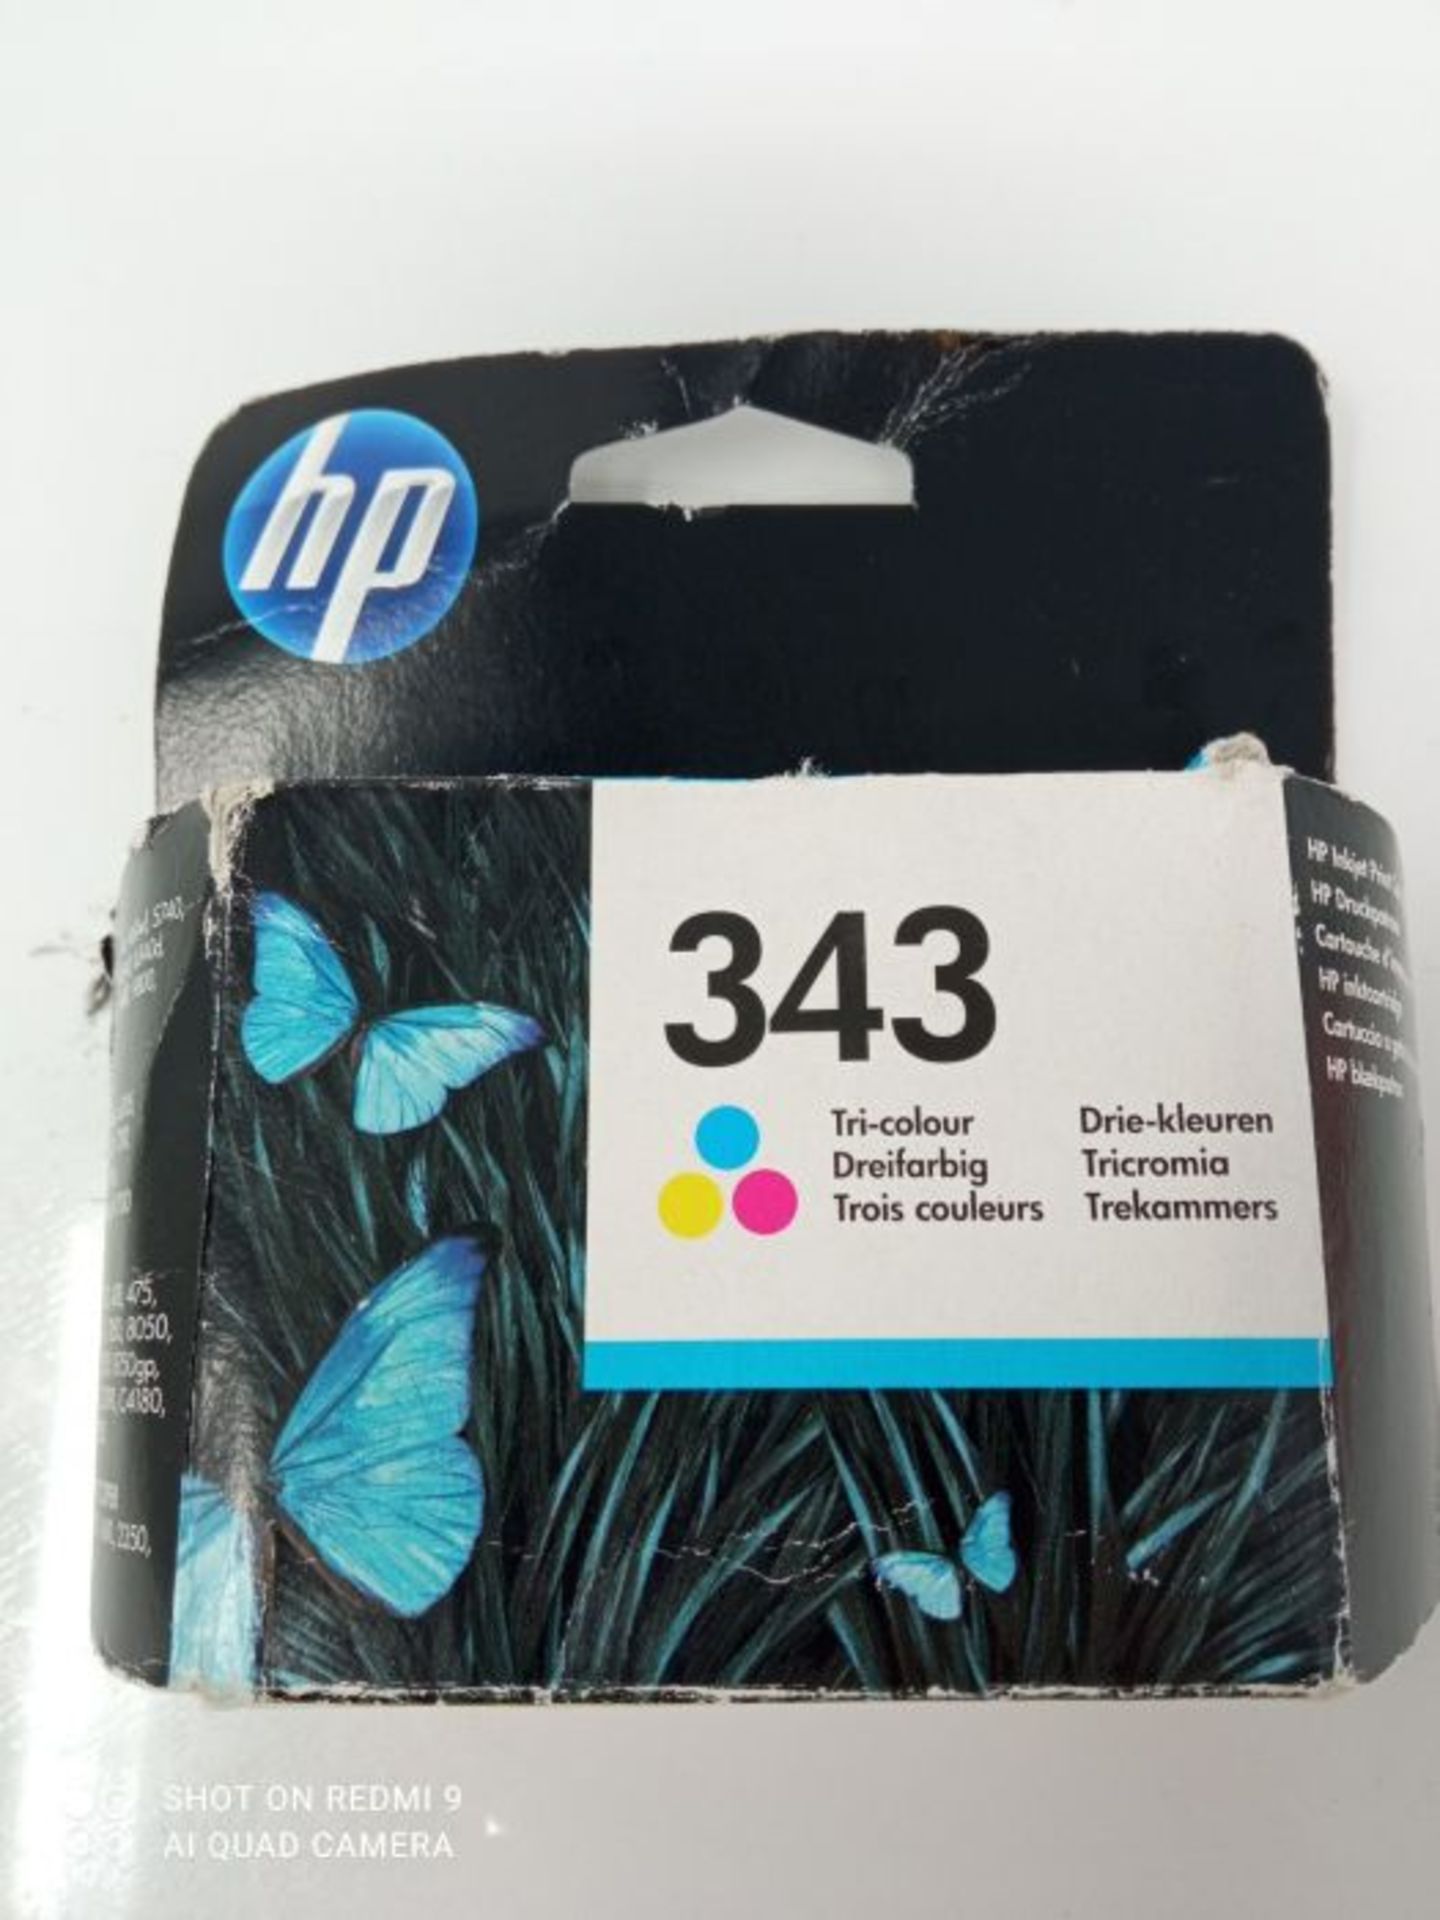 HP C8766EE 343 Original Ink Cartridge, Tri-color, Single Pack - Image 2 of 3